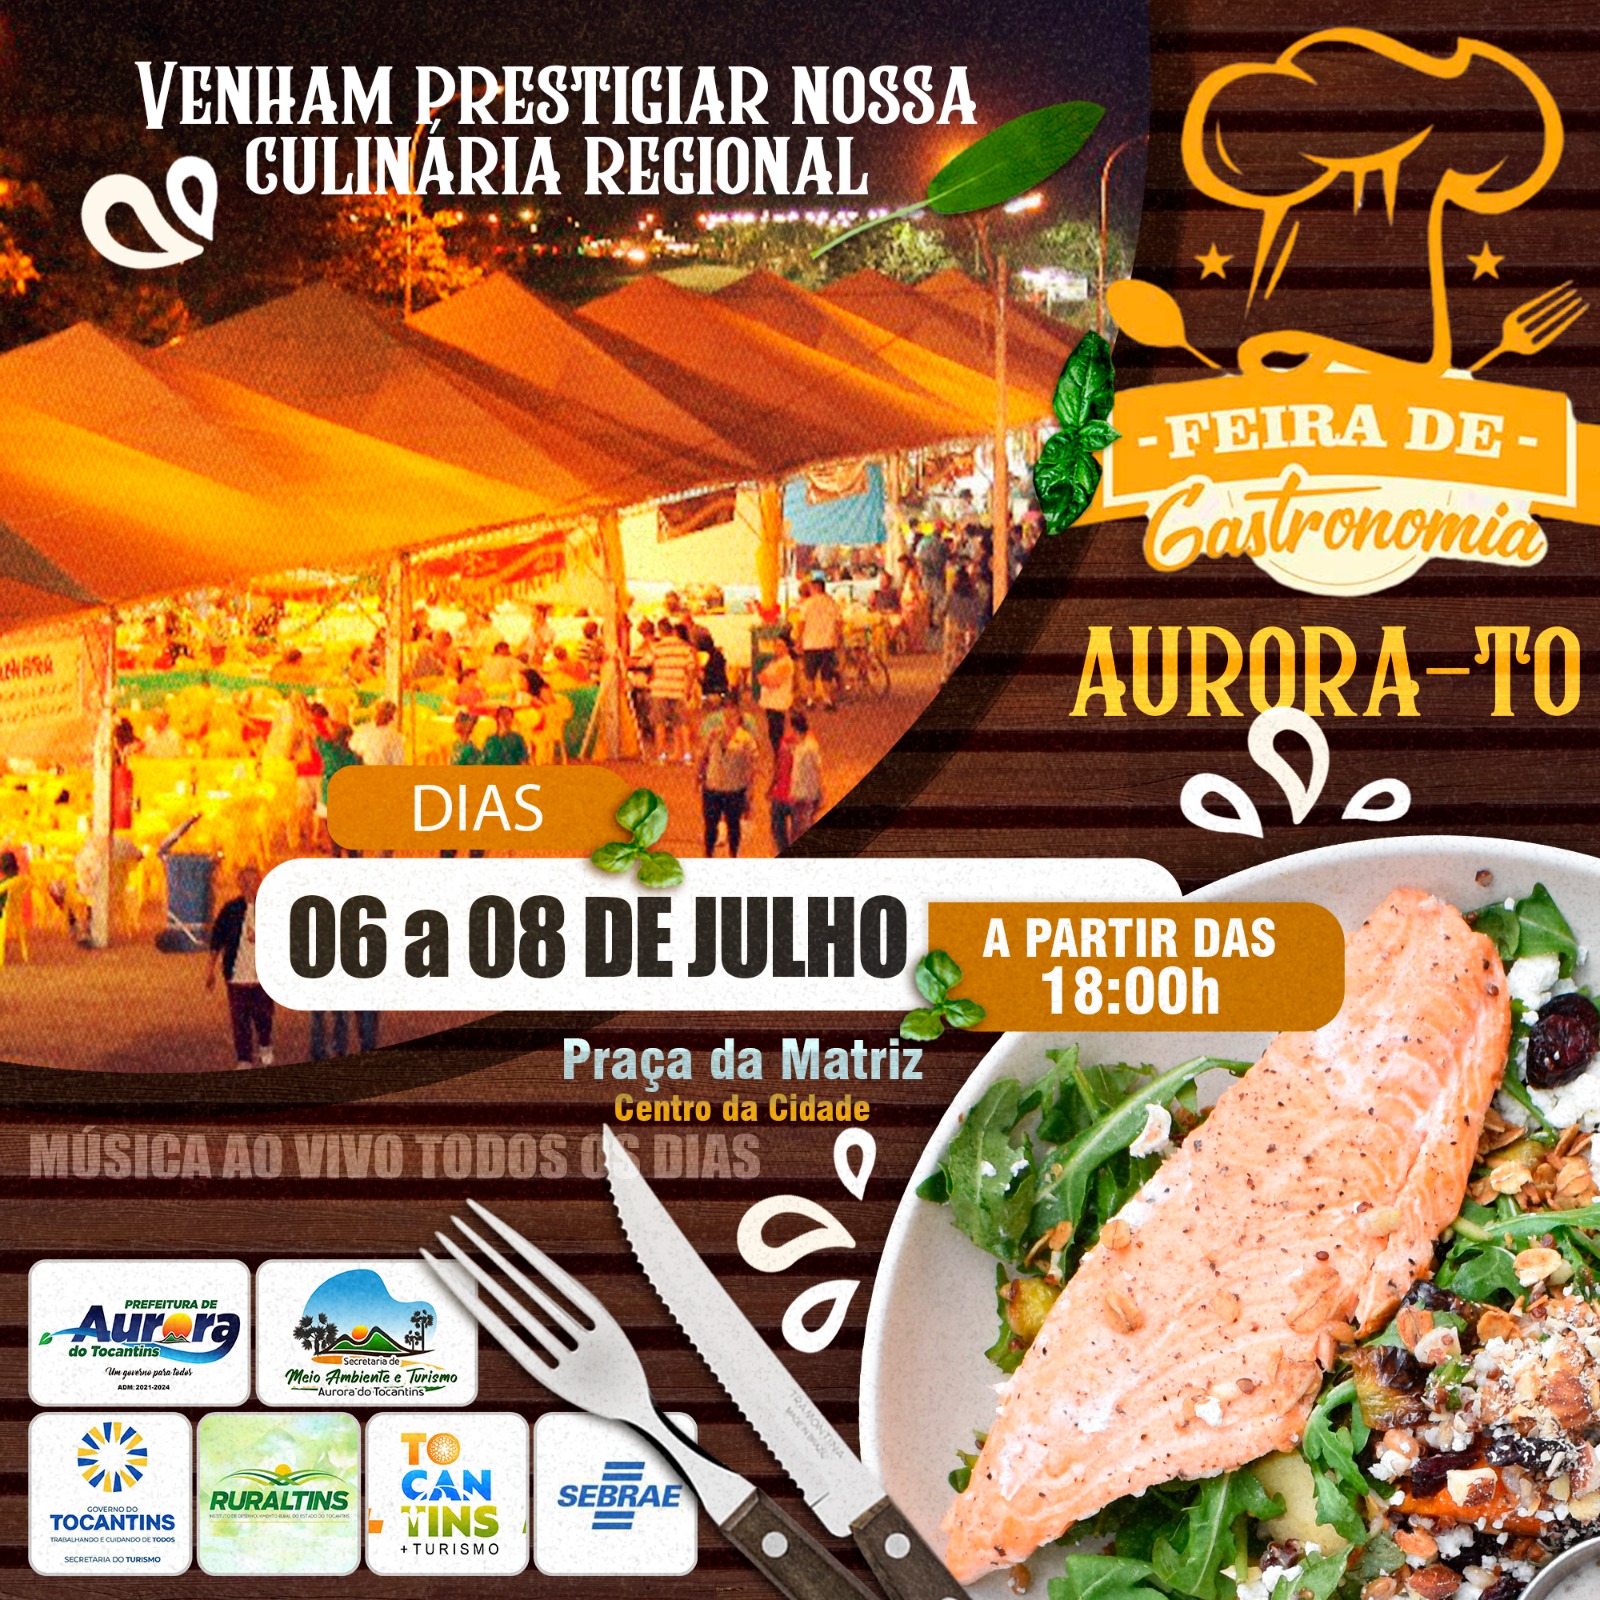 Aurora do Tocantins (TO) recebe, a partir de amanhã, a “Feira de Gastronomia de Aurora (TO)”